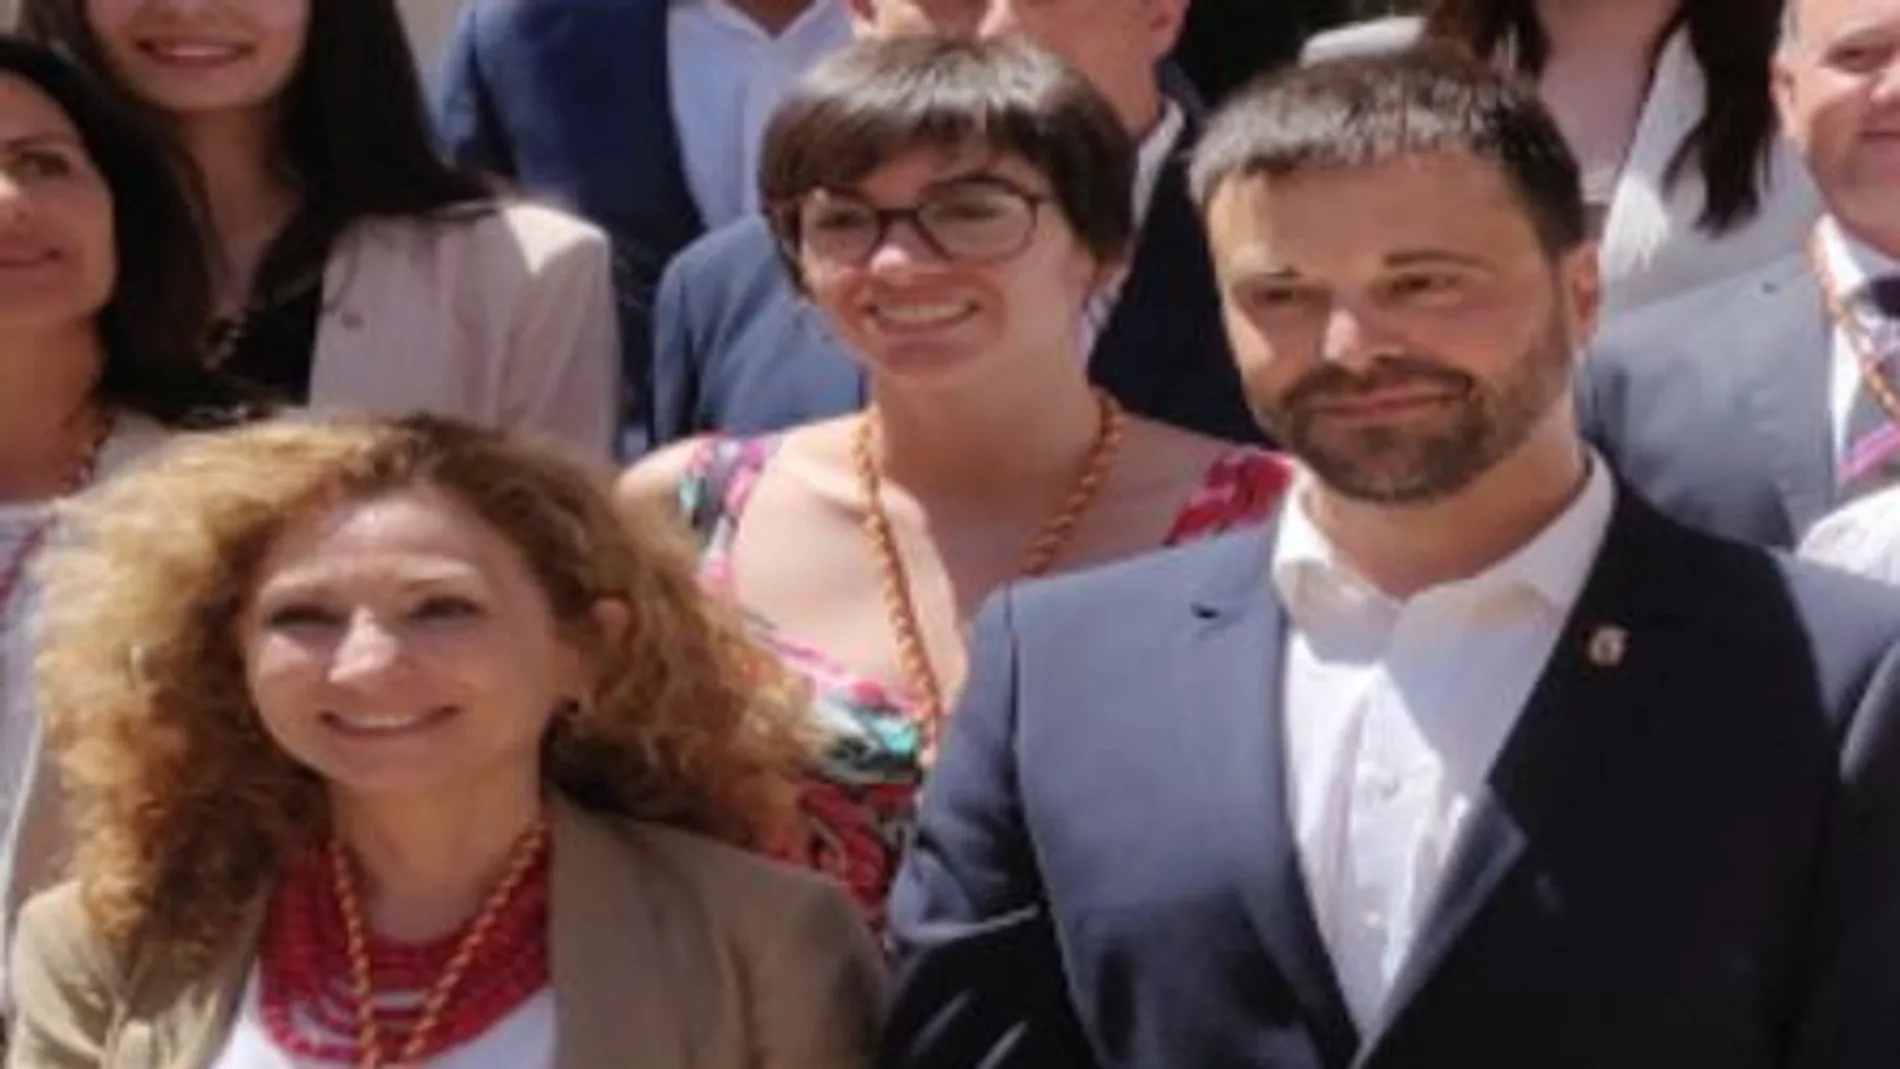 La concejala de Vinaròs, Ana Fibla, junto al alcalde socialista, Guillem Alsina